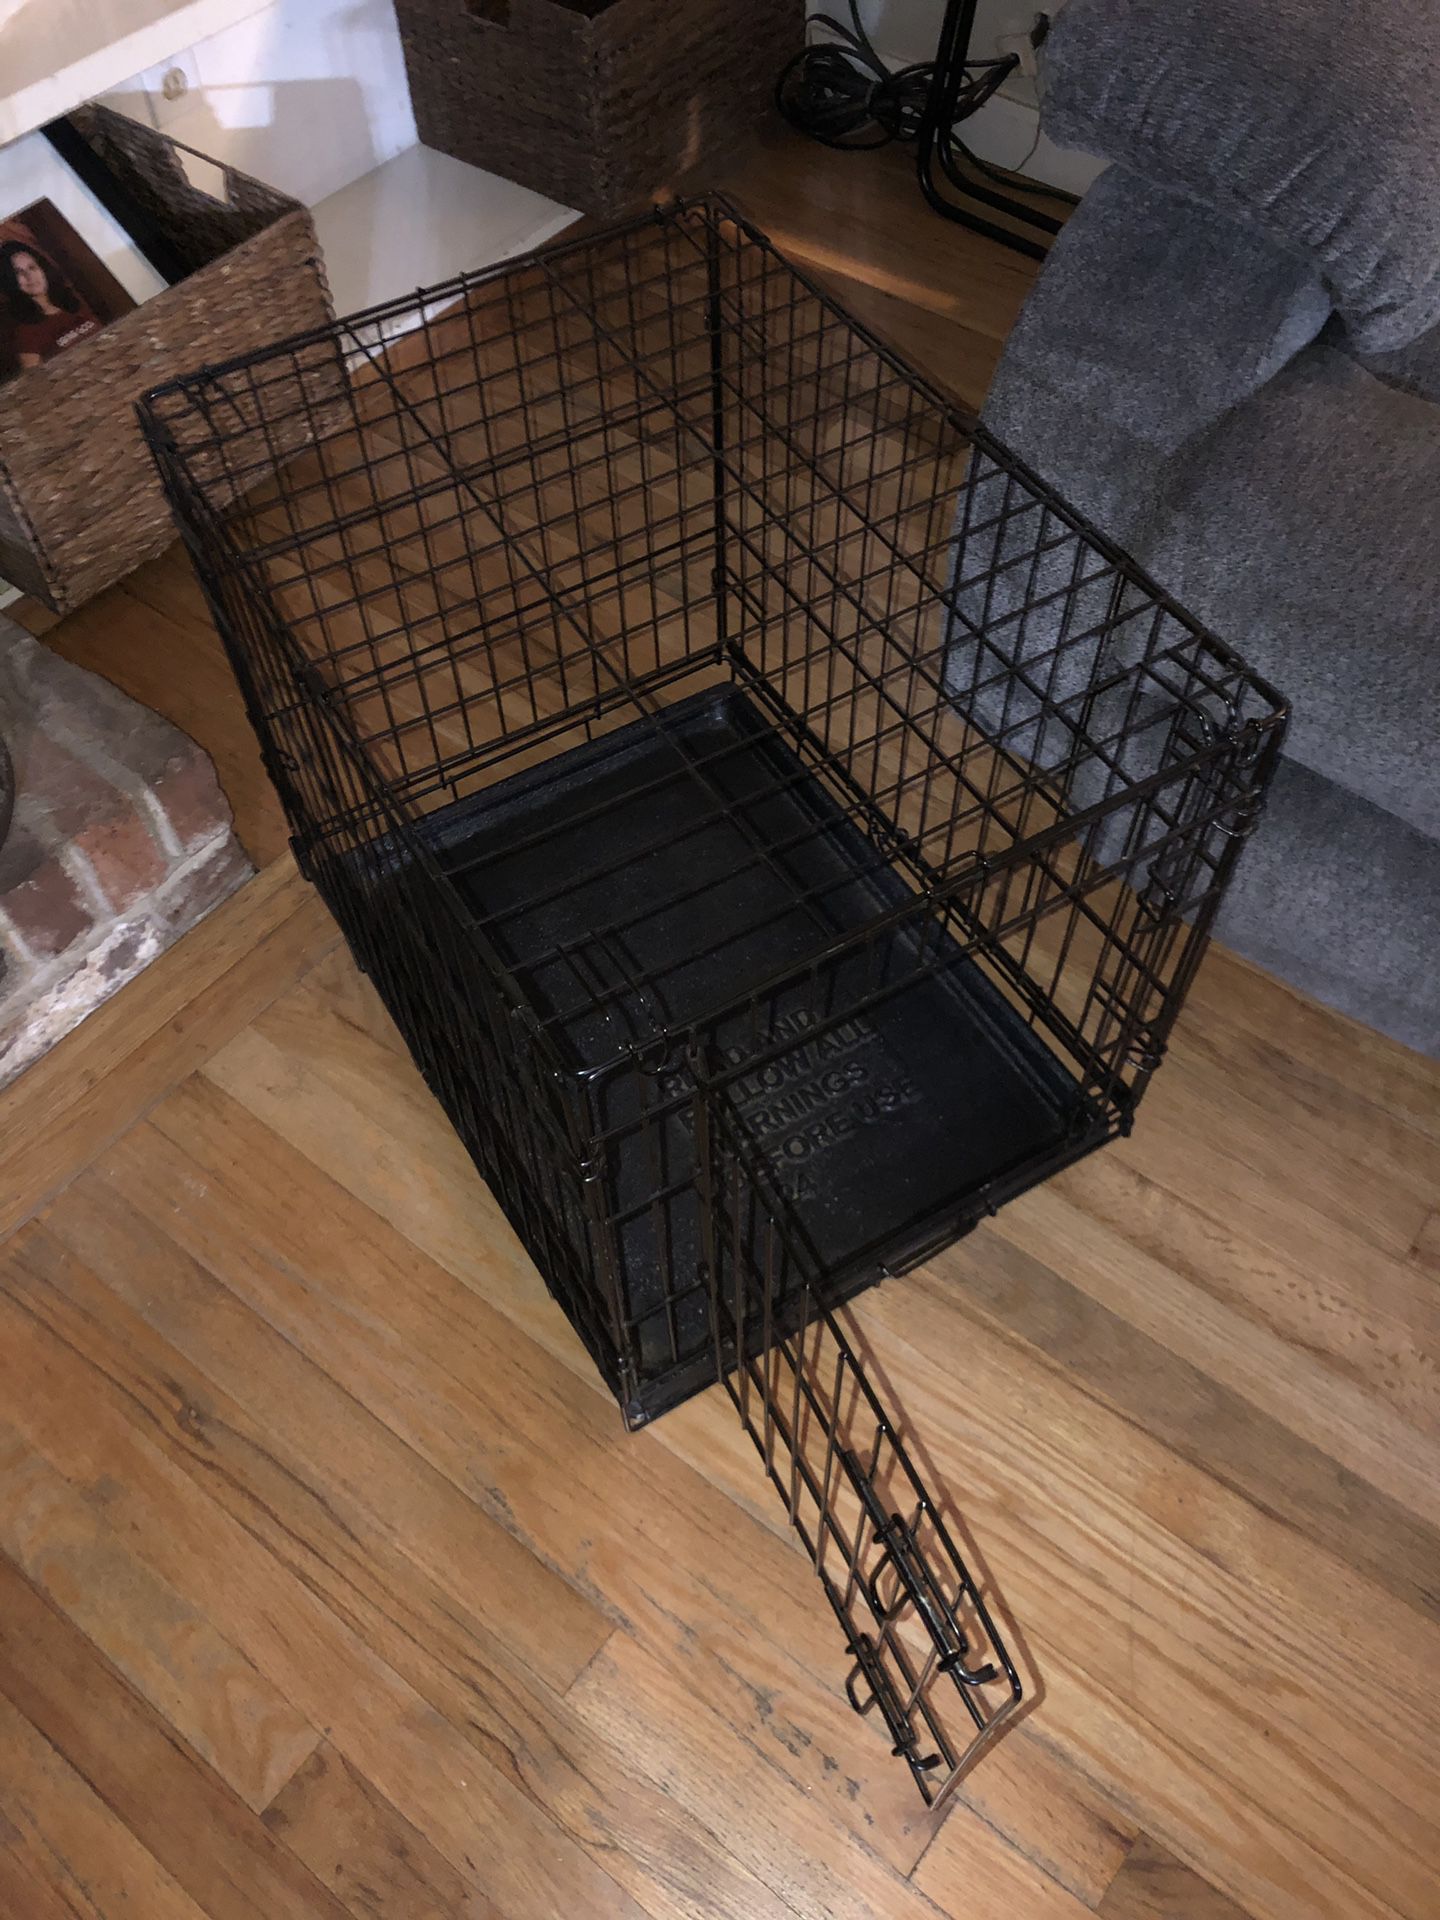 Dog kennel